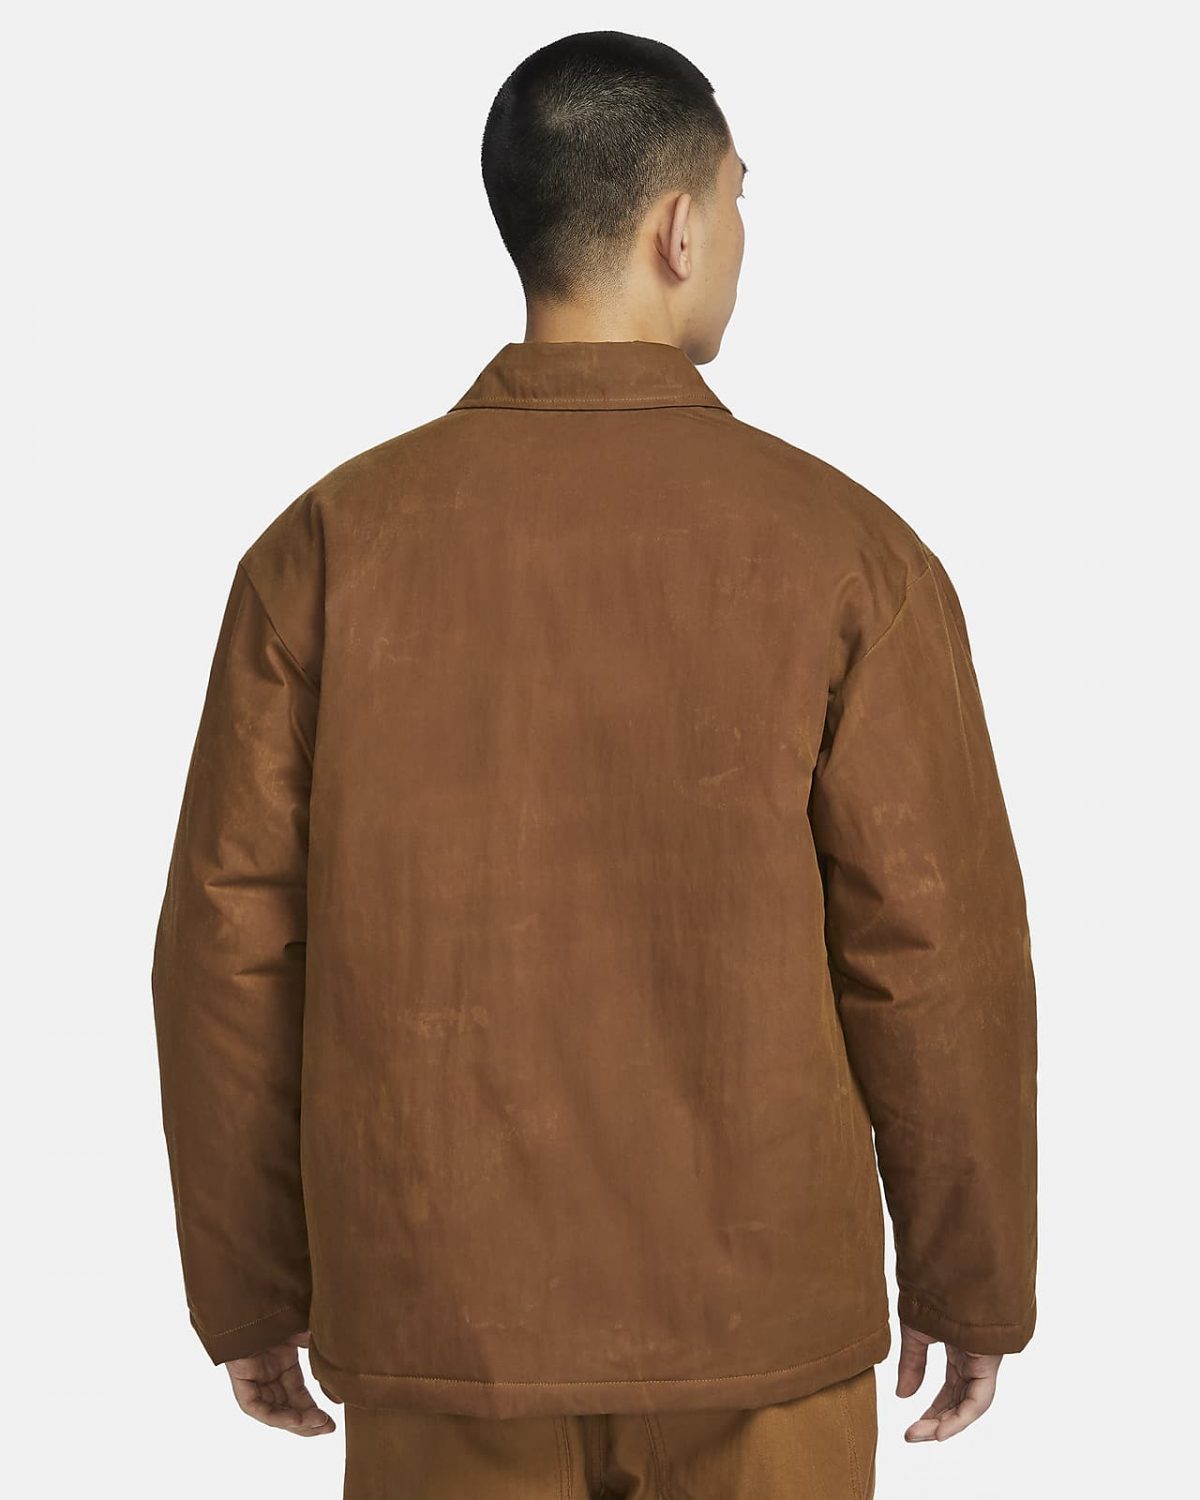 Мужская куртка Nike Life коричневая фотография